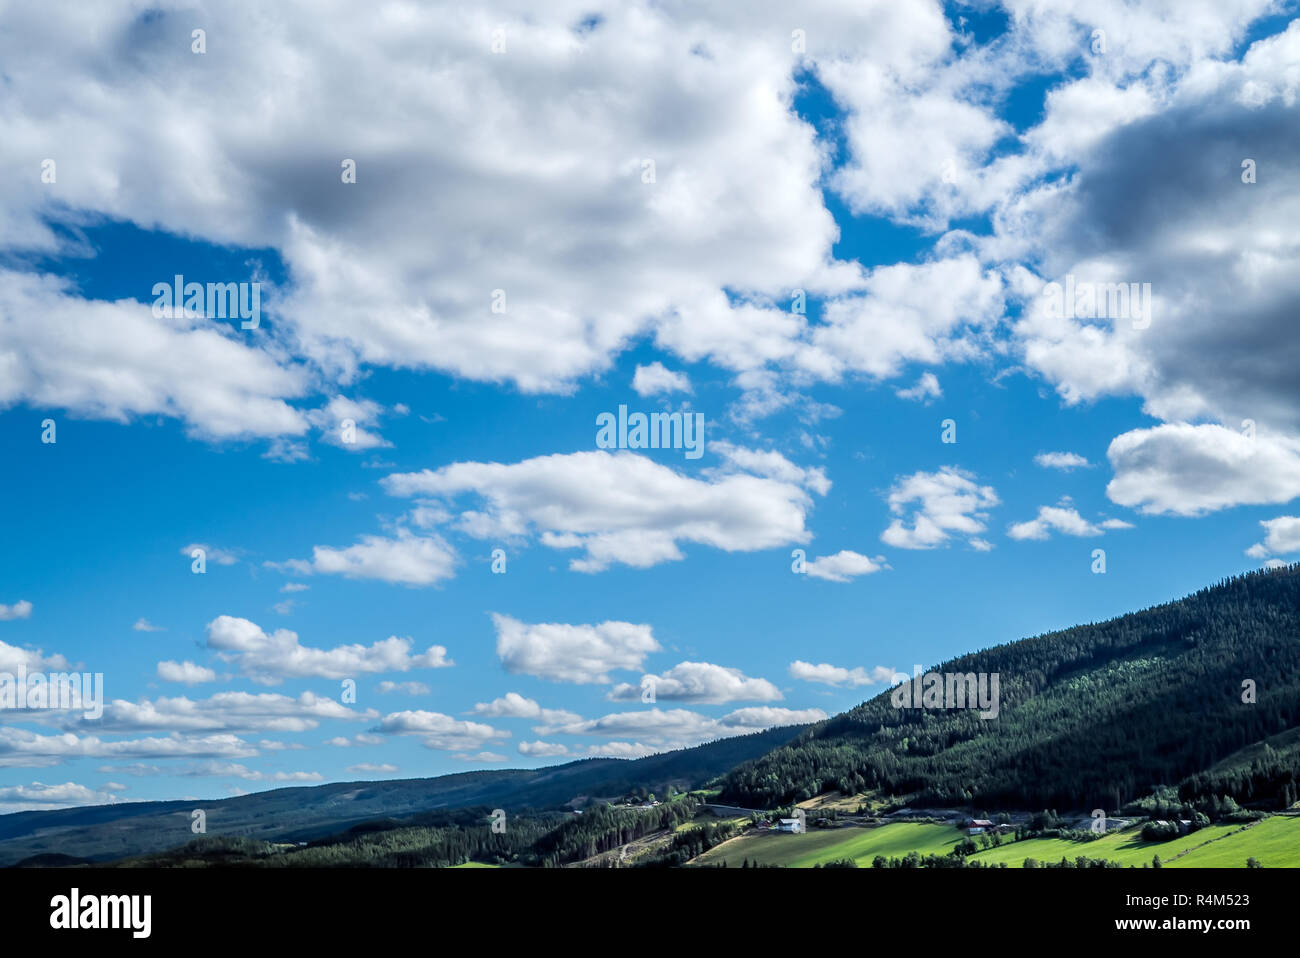 Une vue panoramique et spectaculaire avec de nombreux nuages Cloudscape sur un ciel bleu au-dessus des montagnes, collines rural idyllique avec des terres agricoles agricoles Banque D'Images